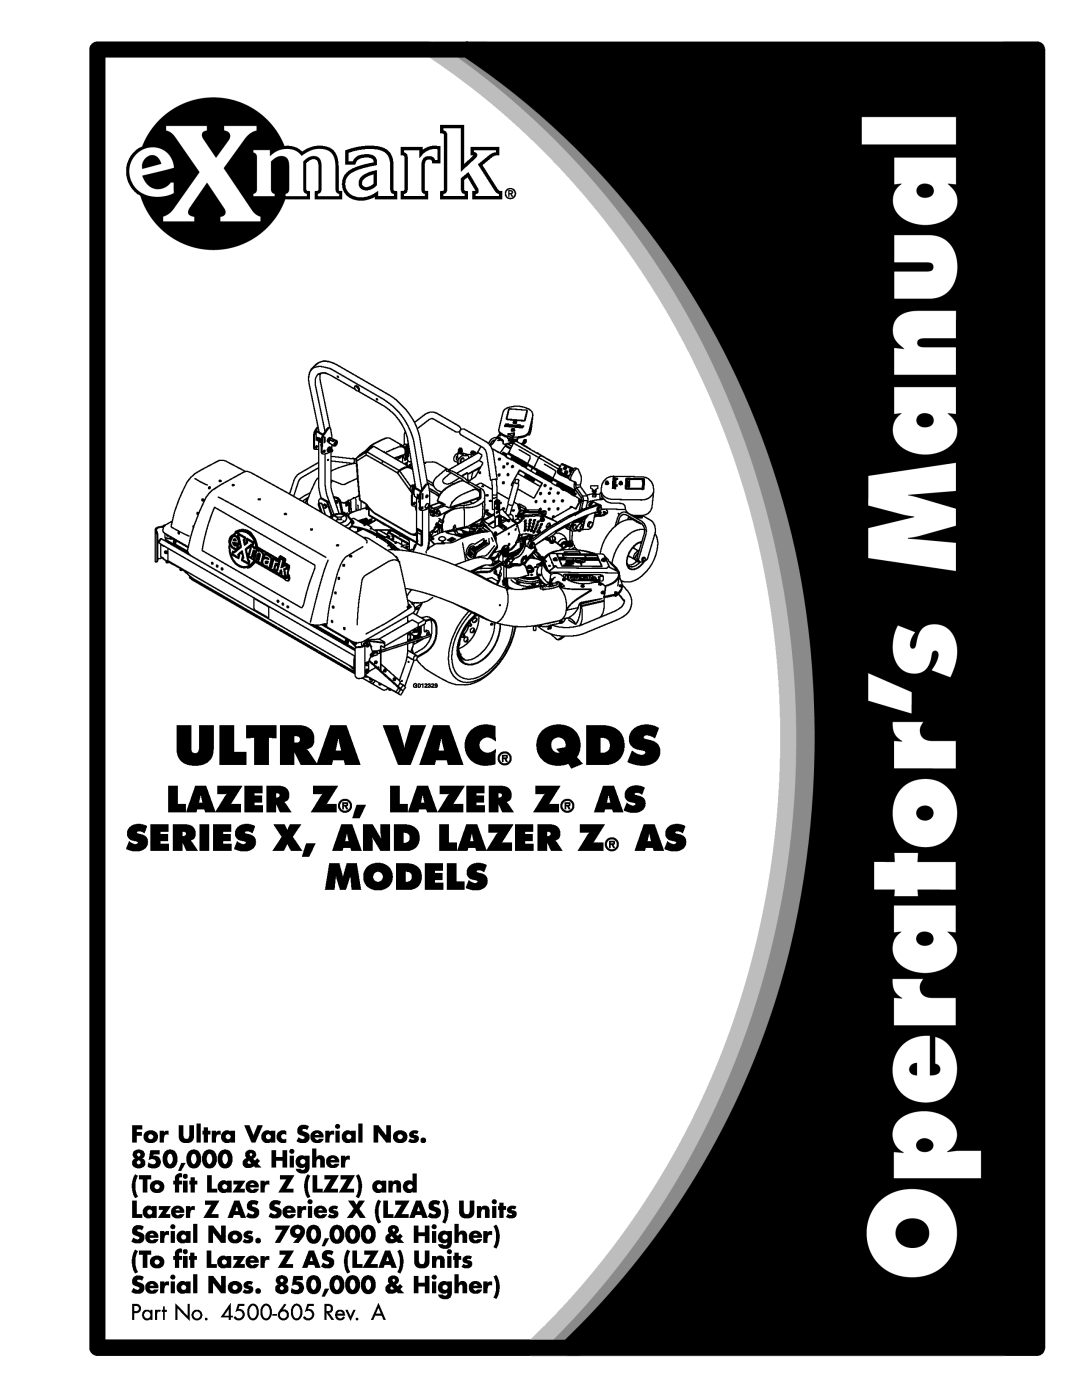 Exmark 00 & Higher, 850 manual Ultra Vac Qds, Lazer Z, Lazer Z As Series X, And Lazer Z As, Models, To fit Lazer Z LZZ and 